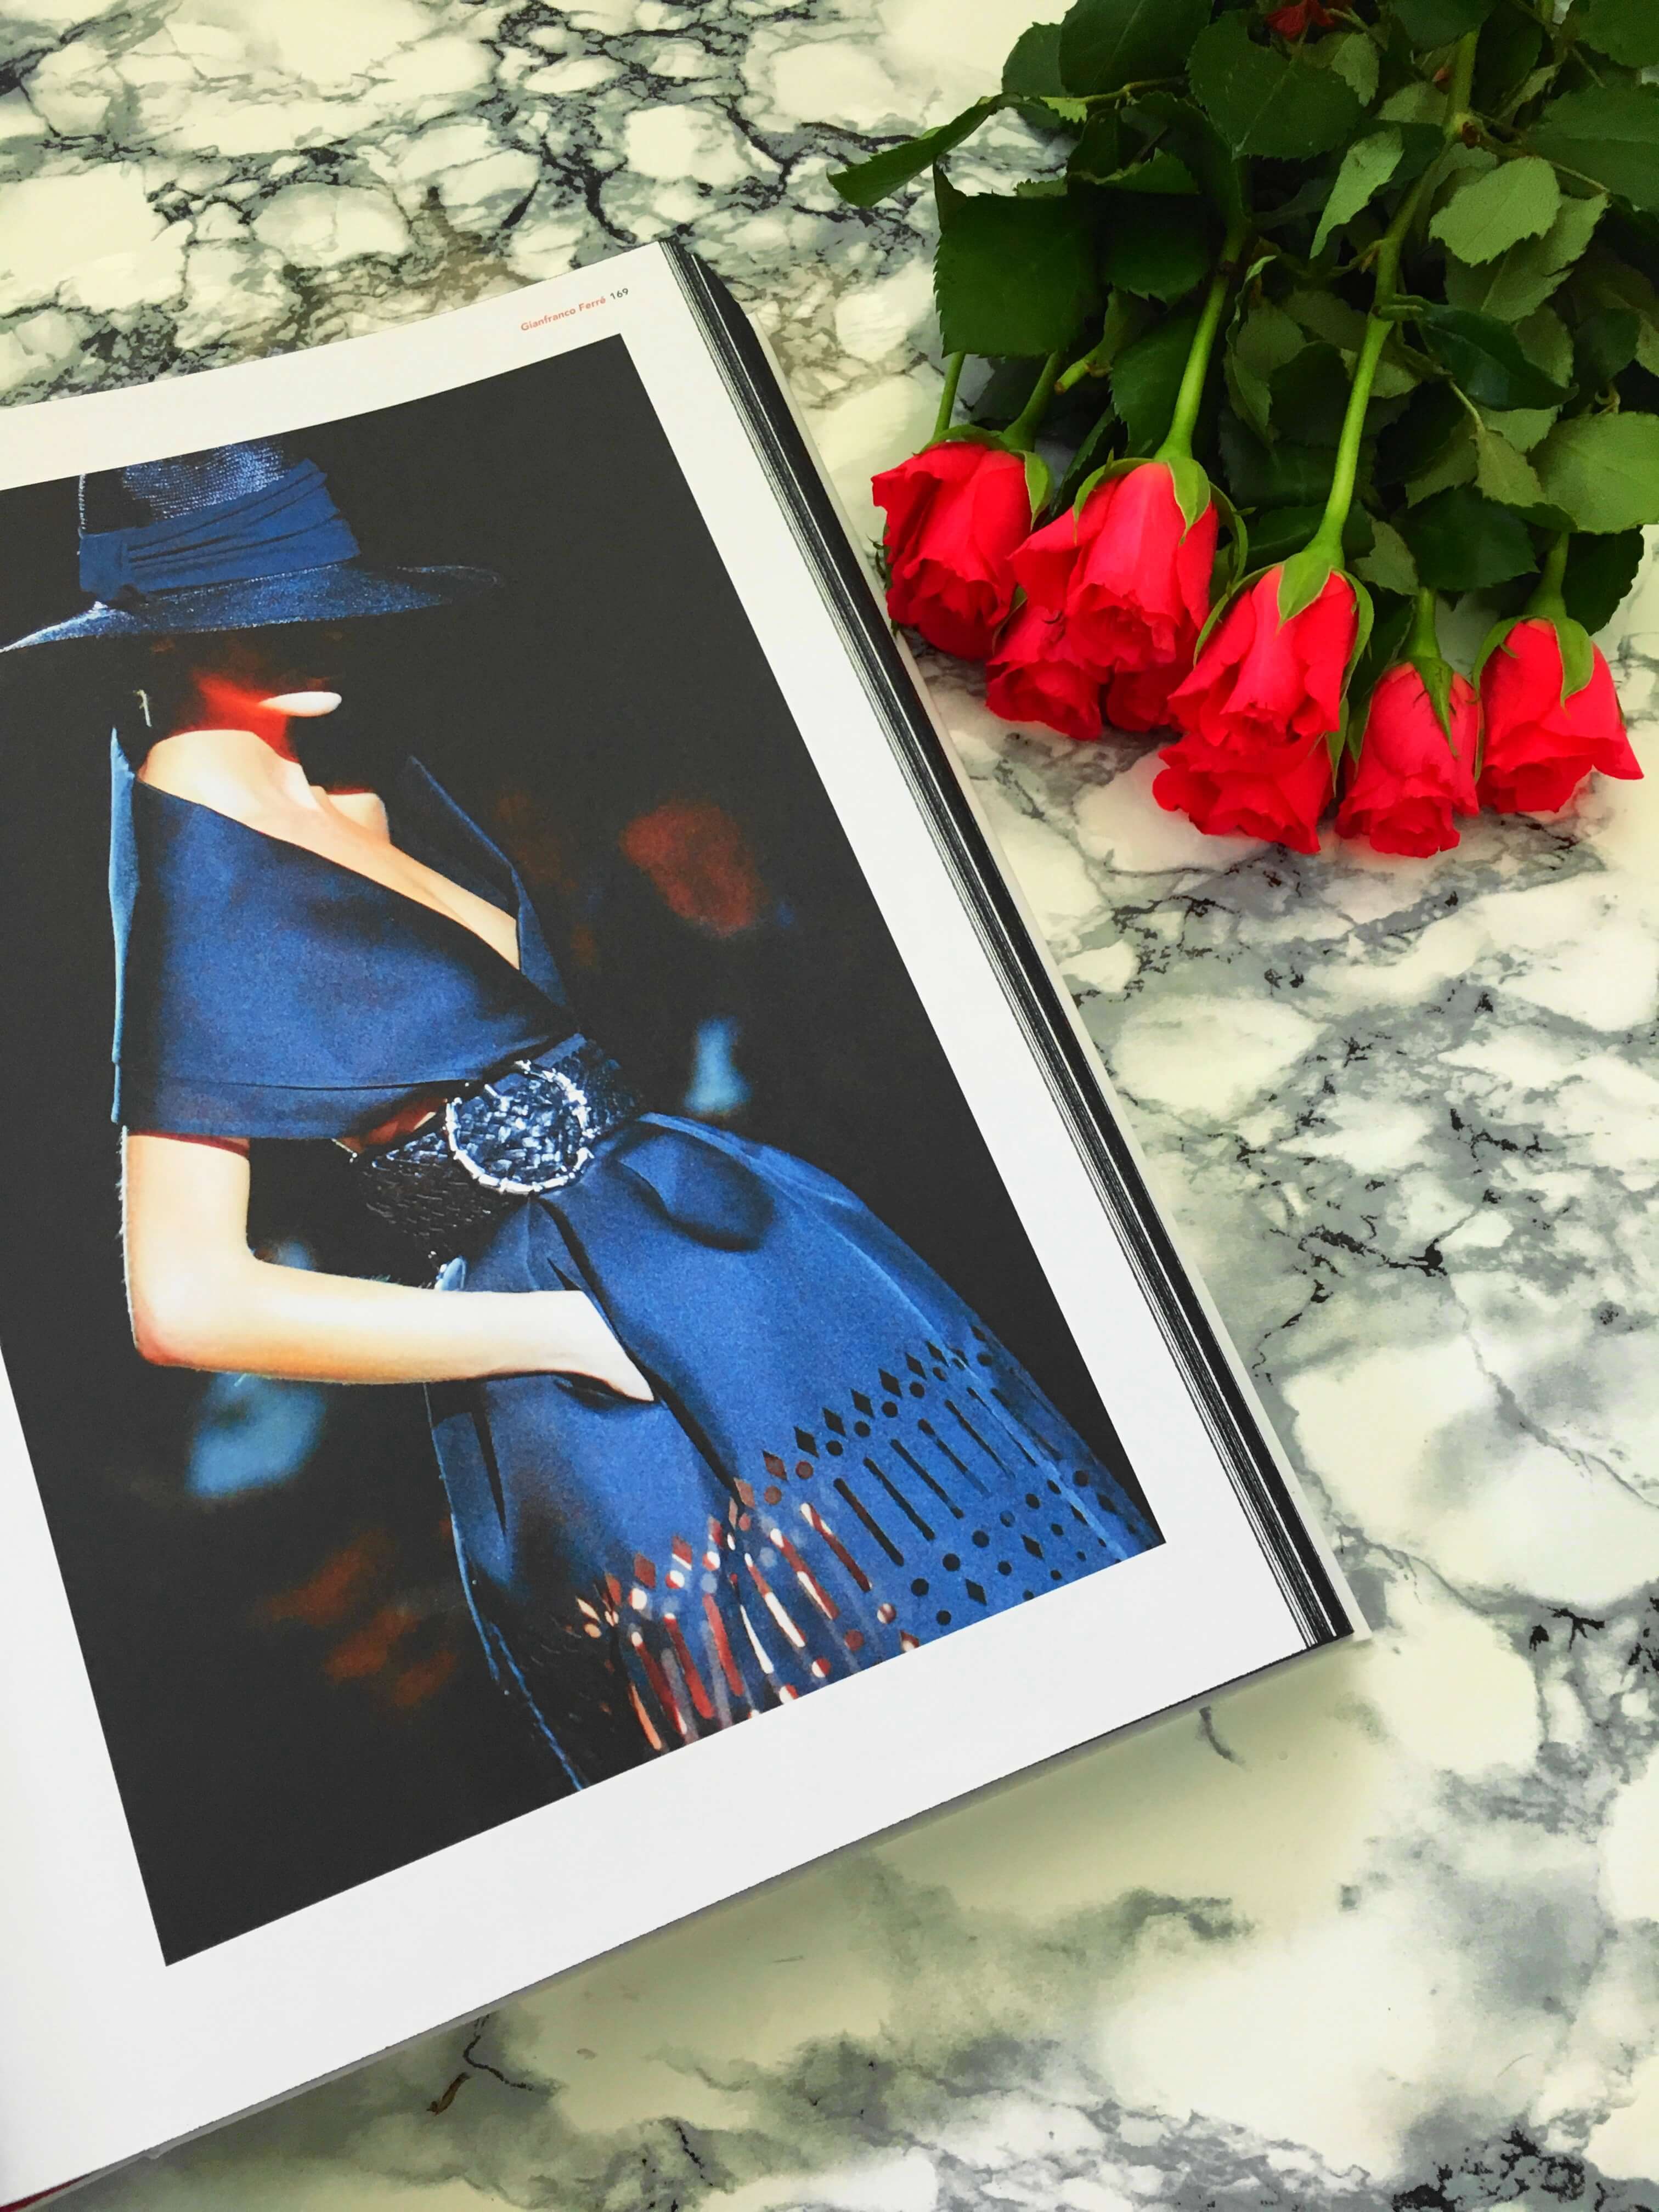 Heute stelle ich euch den für jede Fashionista unverzichtbaren Bildband "Mode - Designer, Stile, Looks aus 150 Jahren" von Arianna Piazza auf dem Blog vor